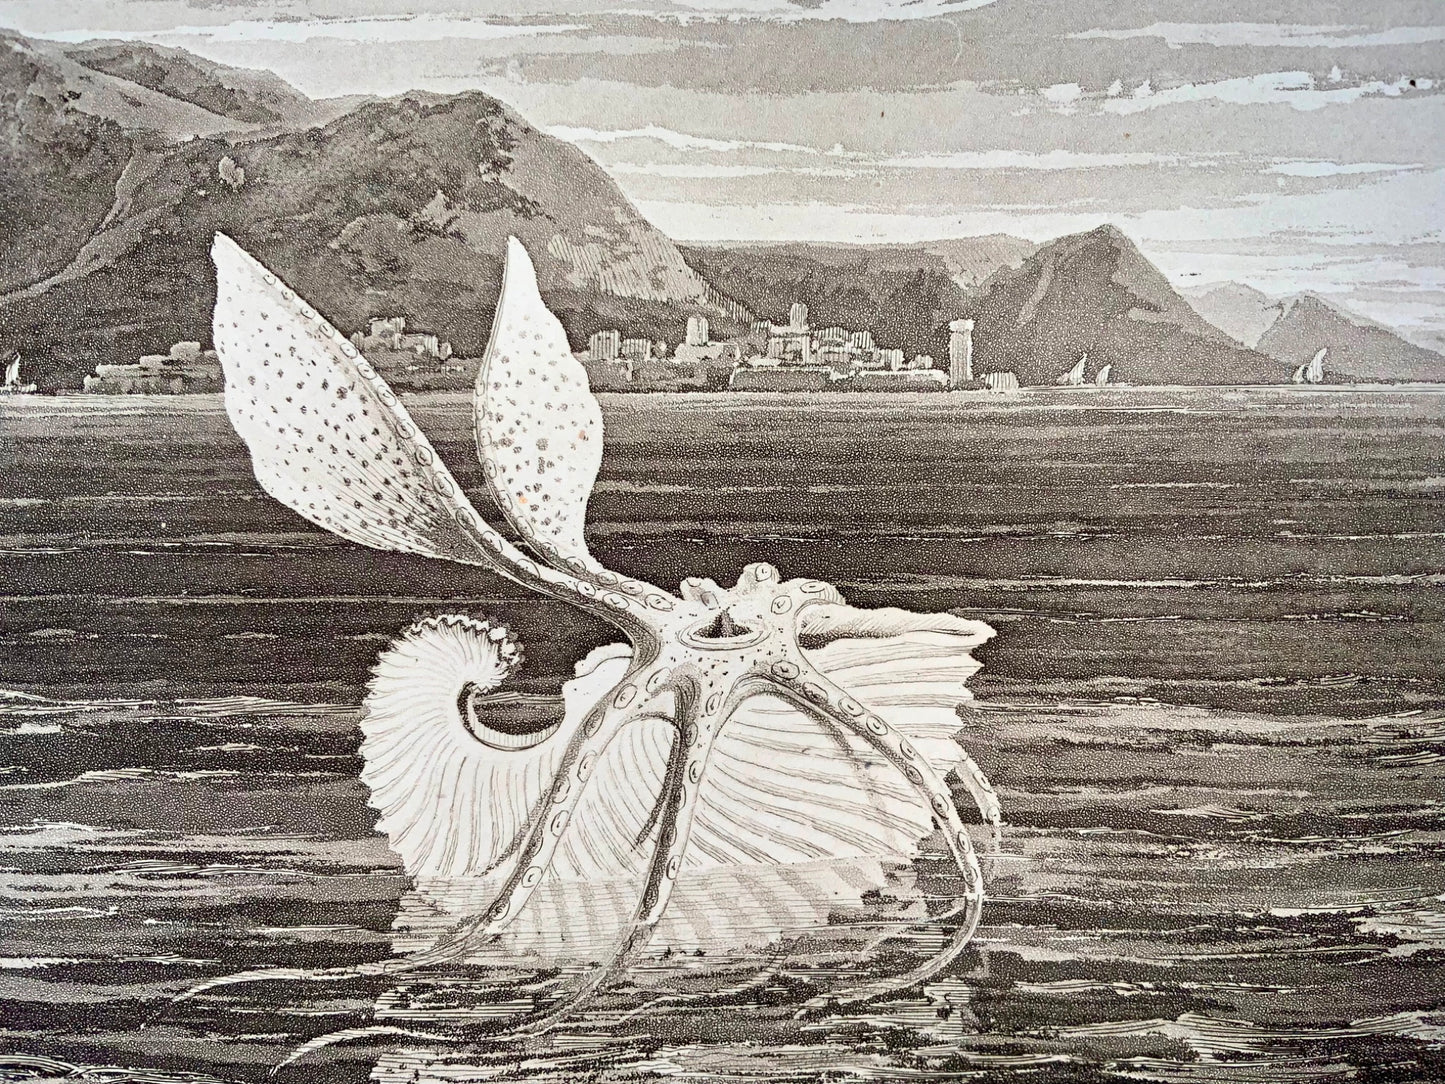 1807 Paper Nautilus, William Daniell, marine, aquatint, folio